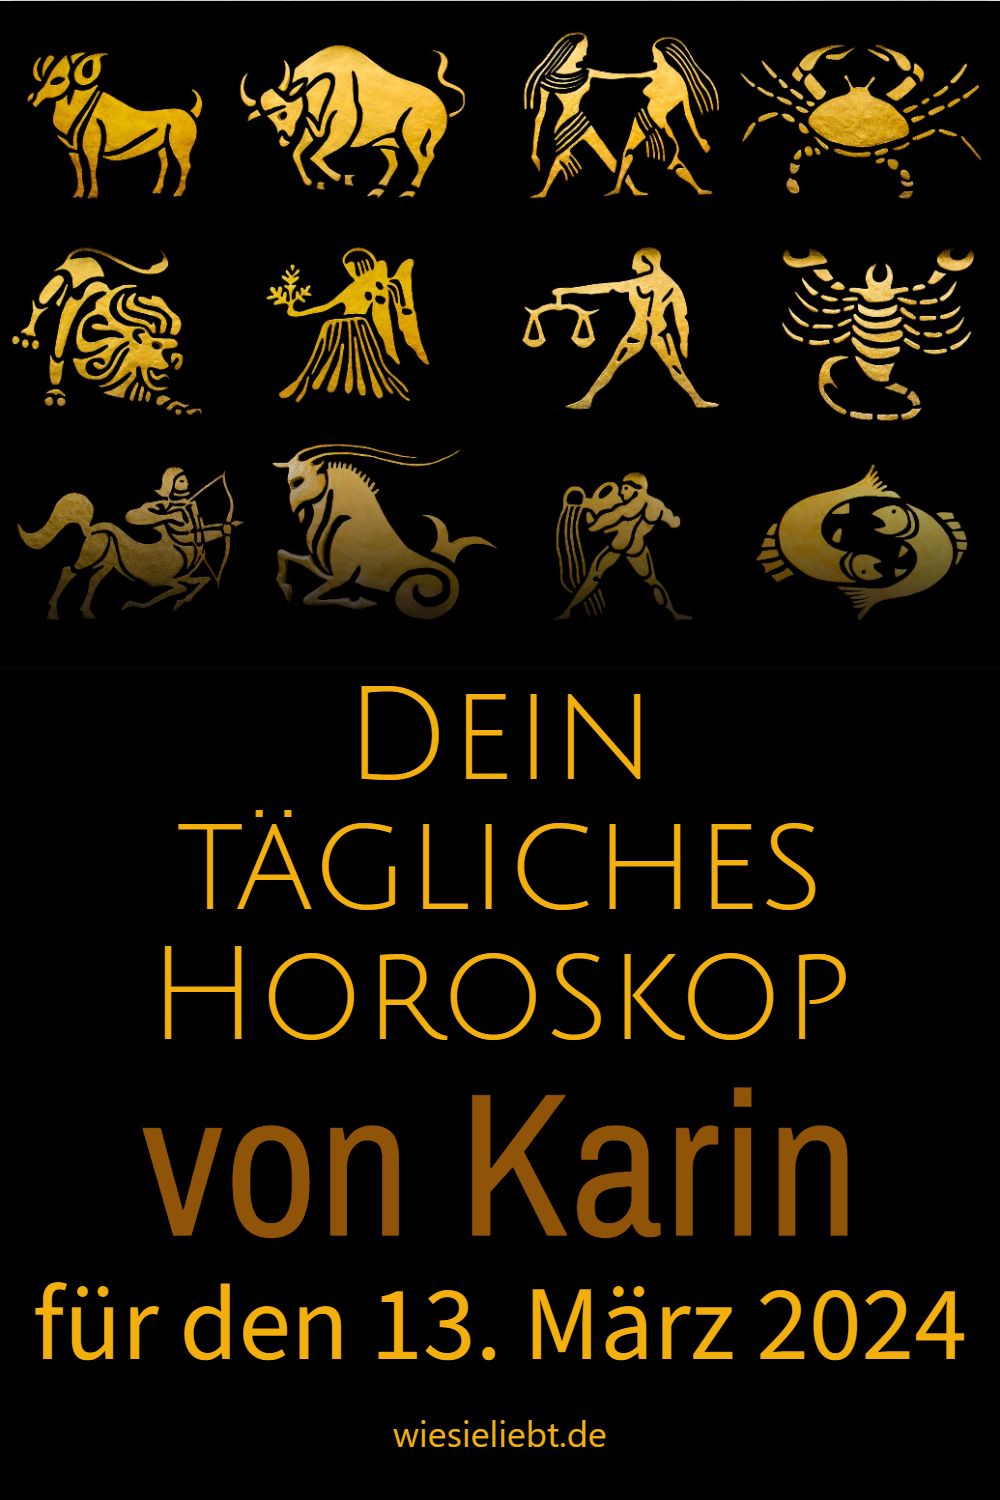 Dein tägliches Horoskop von Karin für den 13. März 2024